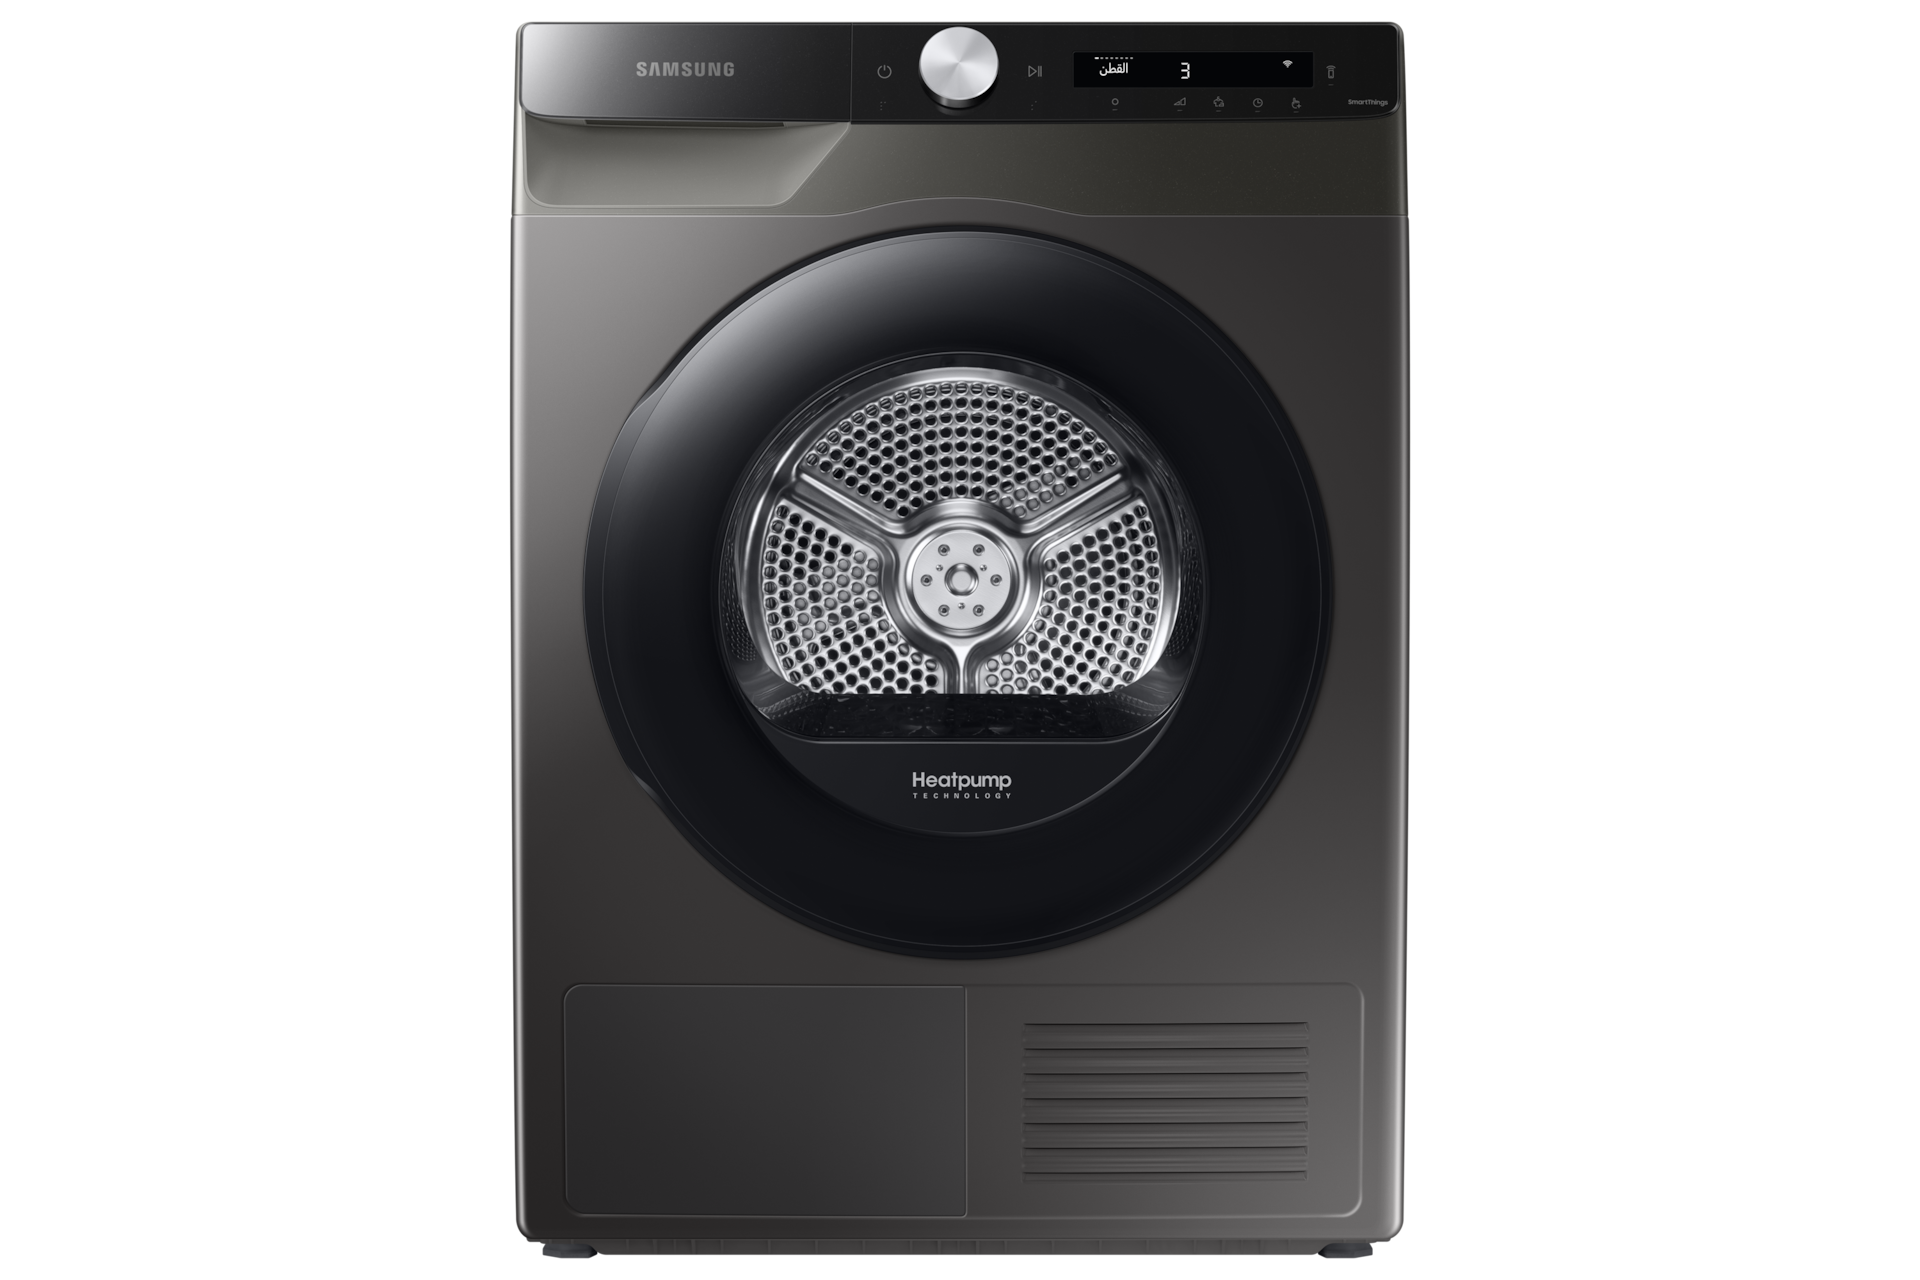 lens Tussendoortje Vochtig Samsung Dryer with Reversible Door, 8kg, Inox | Samsung Gulf